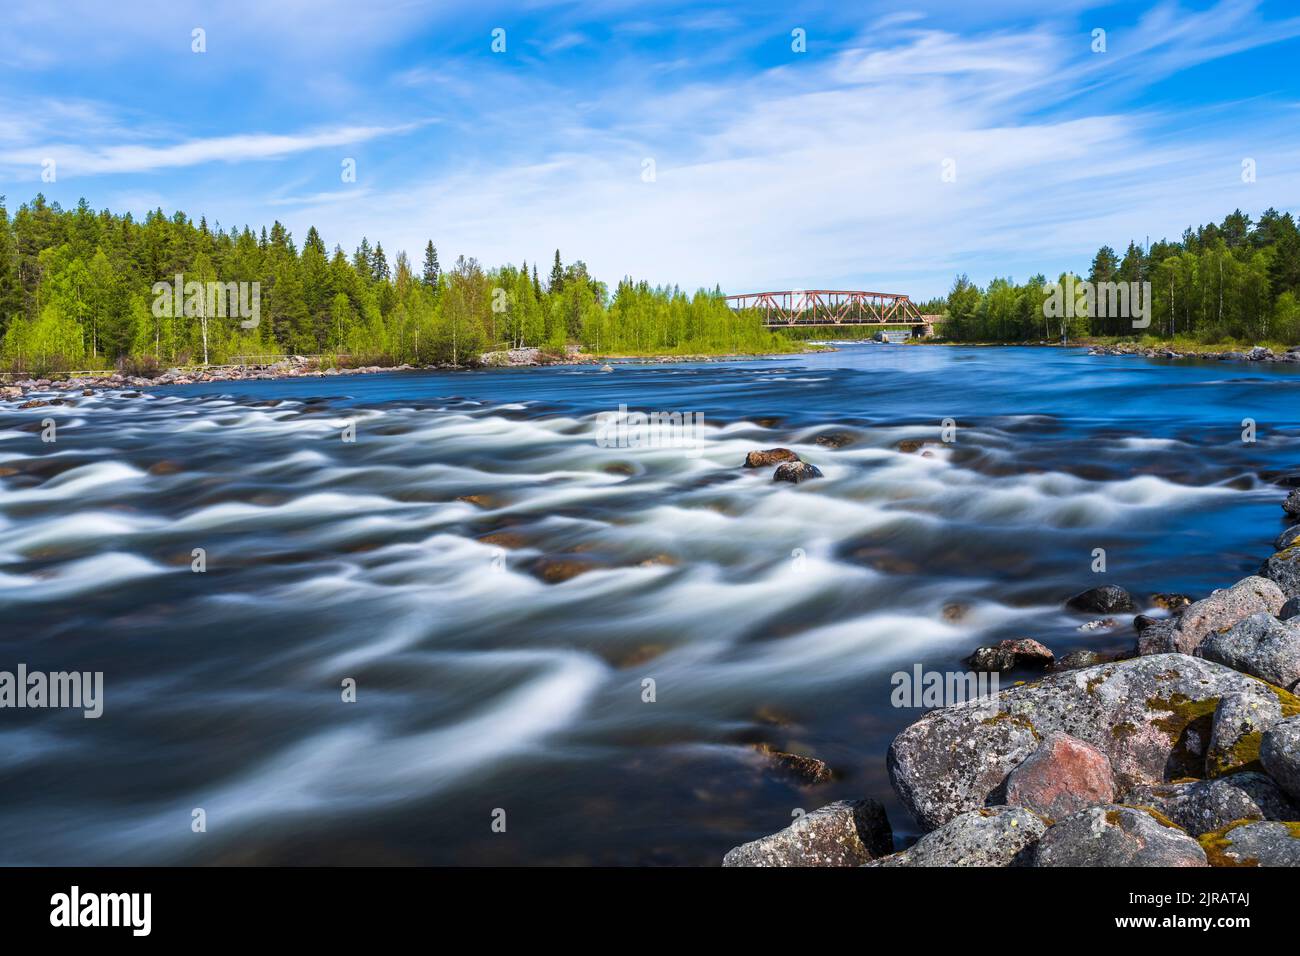 Sweden, Norrbotten County, Long exposure of river Slagnas in summer Stock Photo